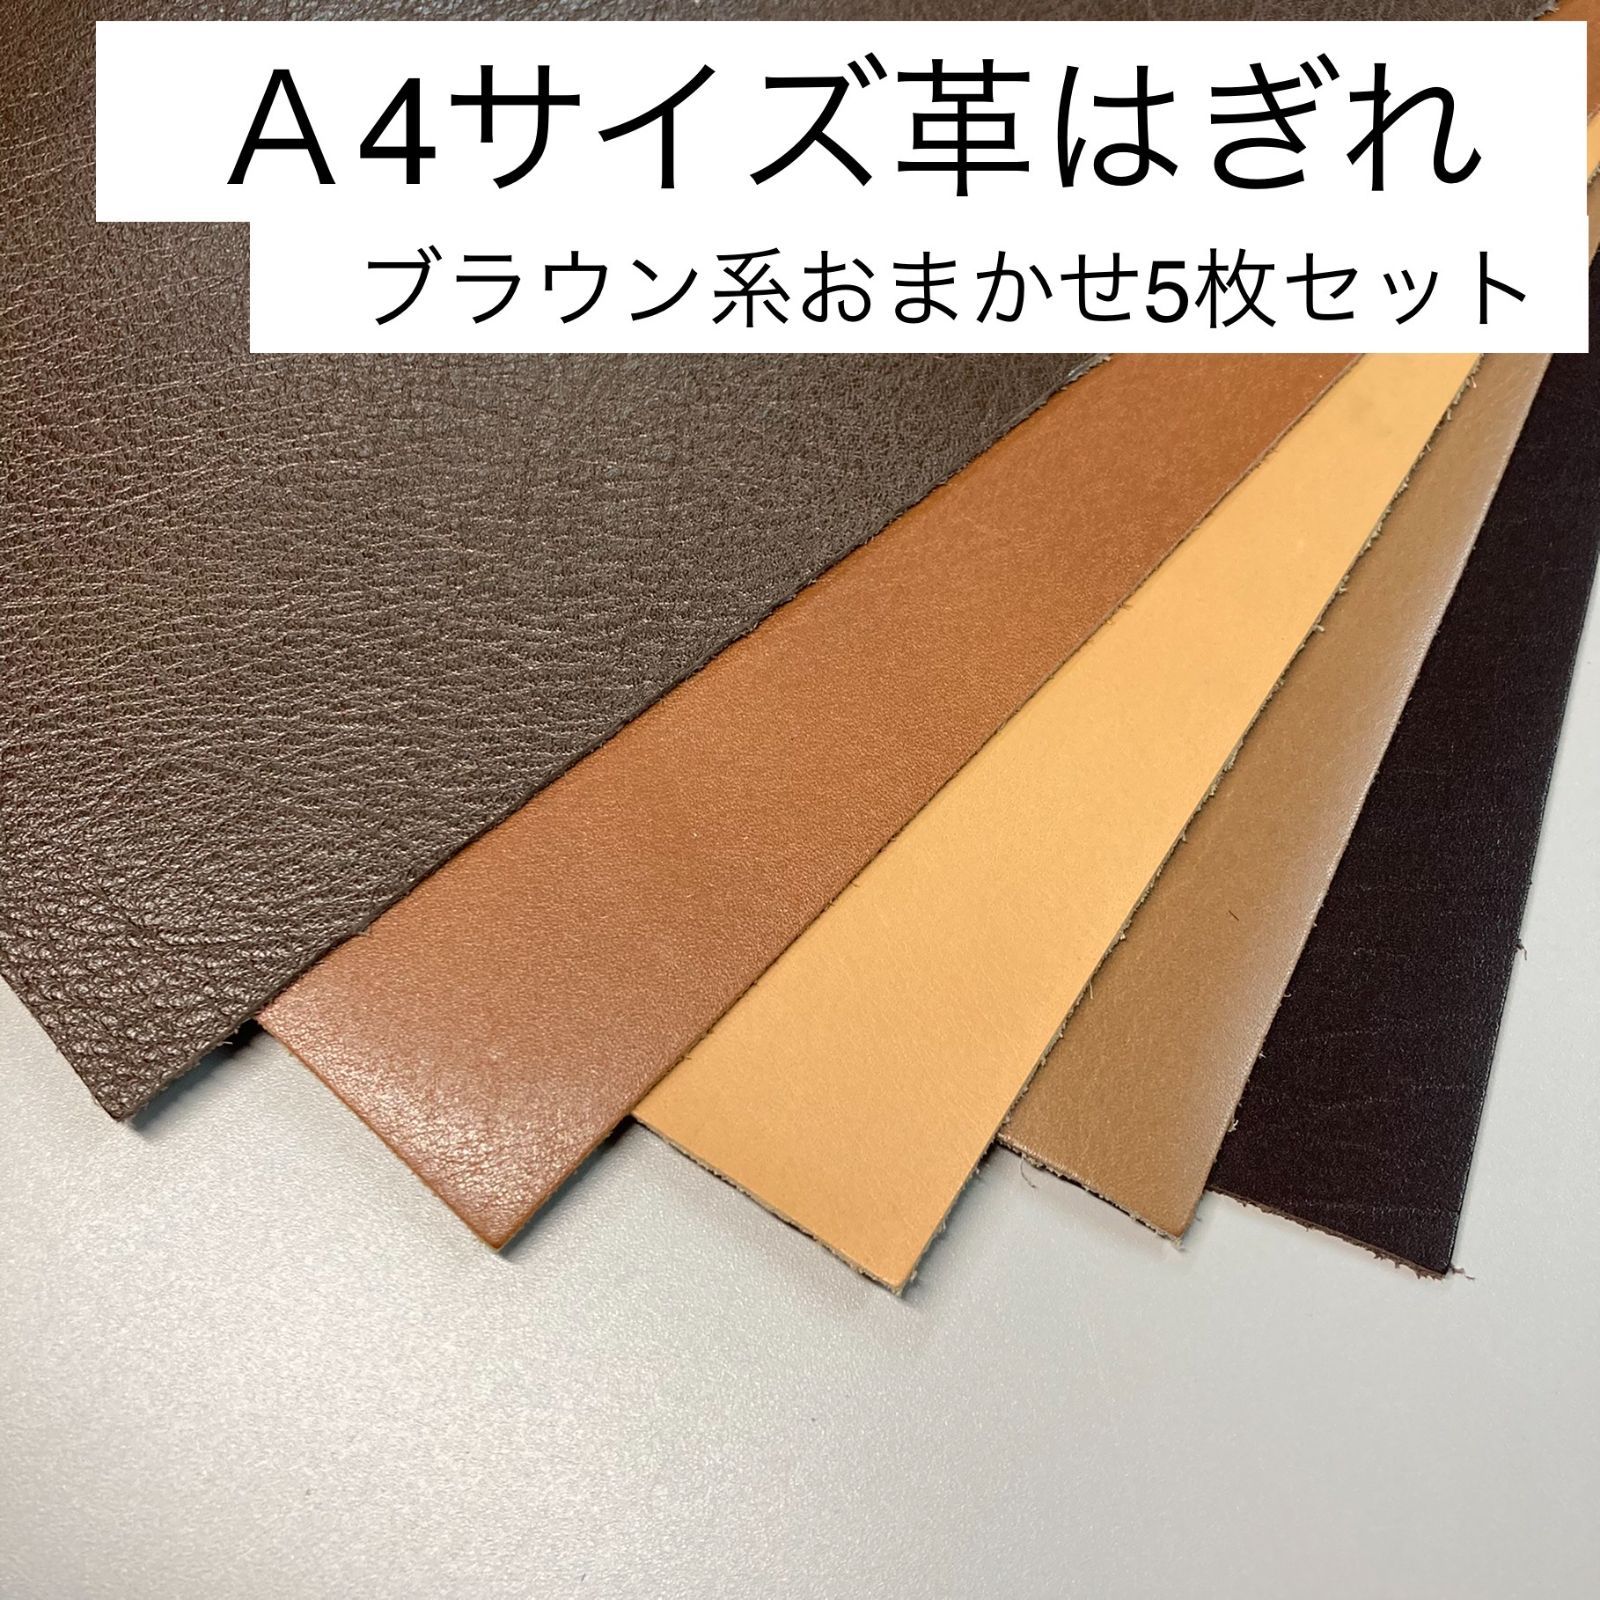 ハンドメイド素材 革 茶色系 4色セット - 材料